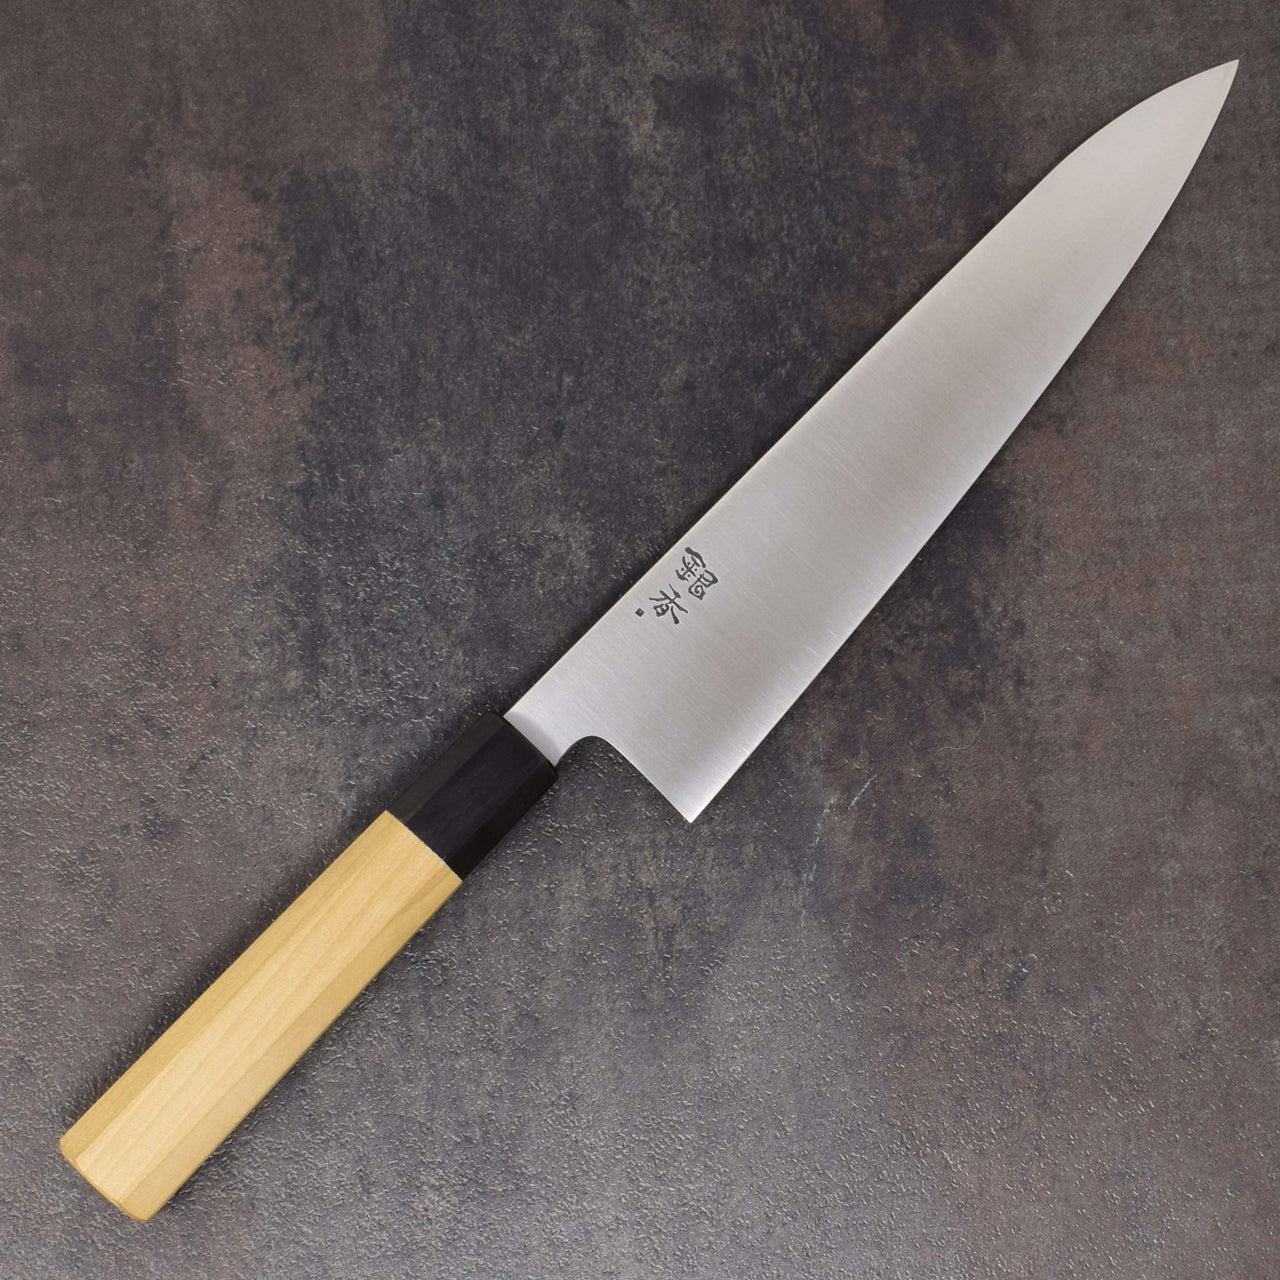 Ashi Ginga Stainless Gyuto 240mm-Knife-Ashi Hamono-Carbon Knife Co